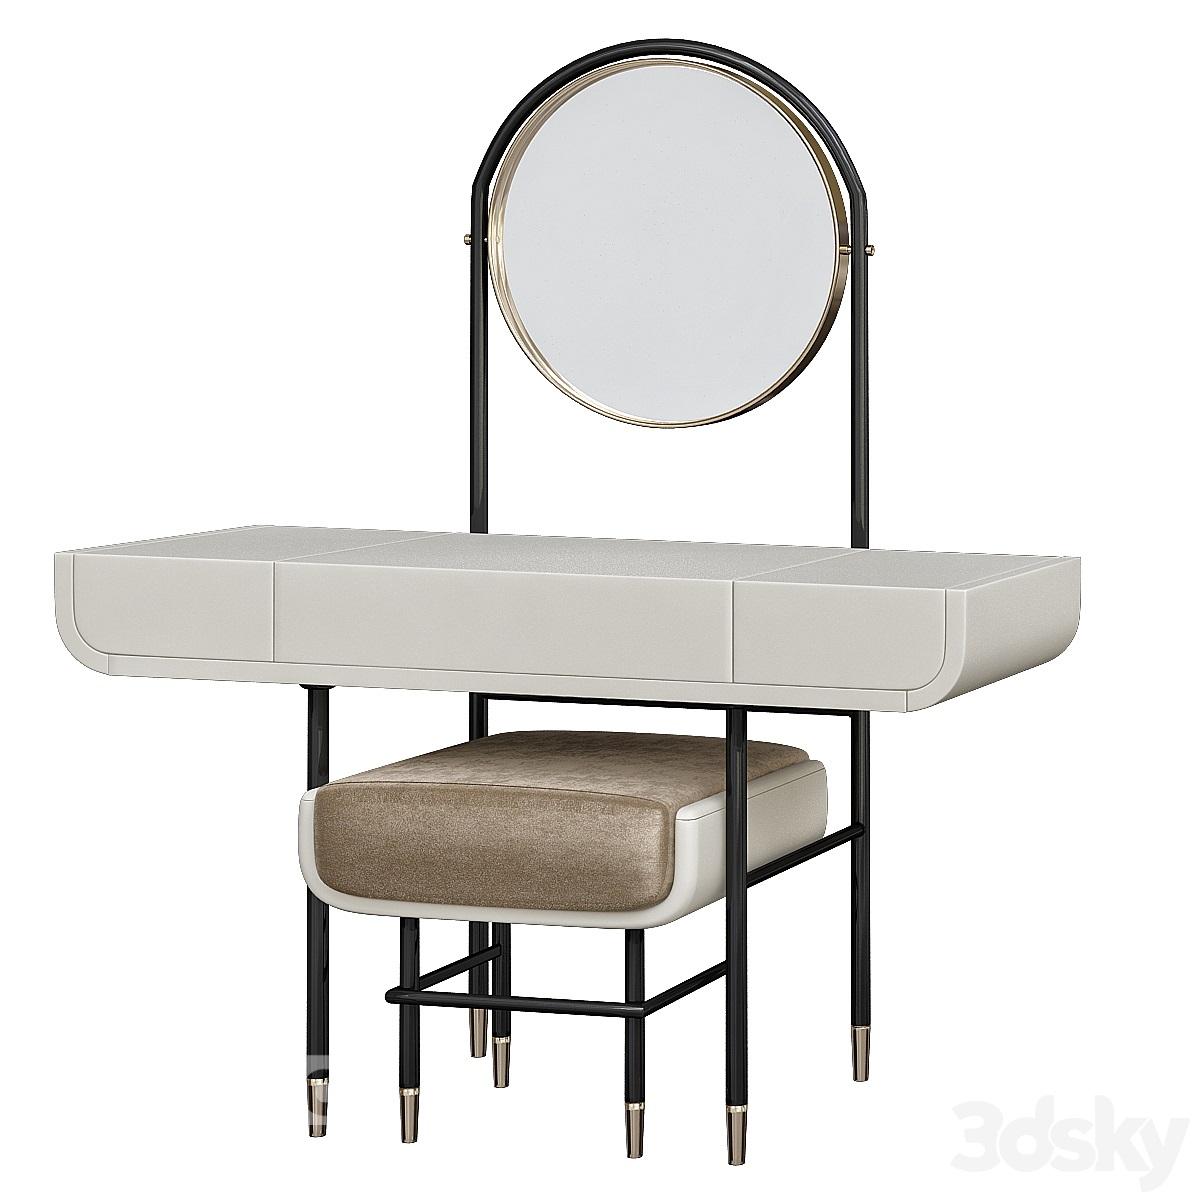 آبجکت میز آرایش کلاسیک با آینه و صندلی به همراه کشو